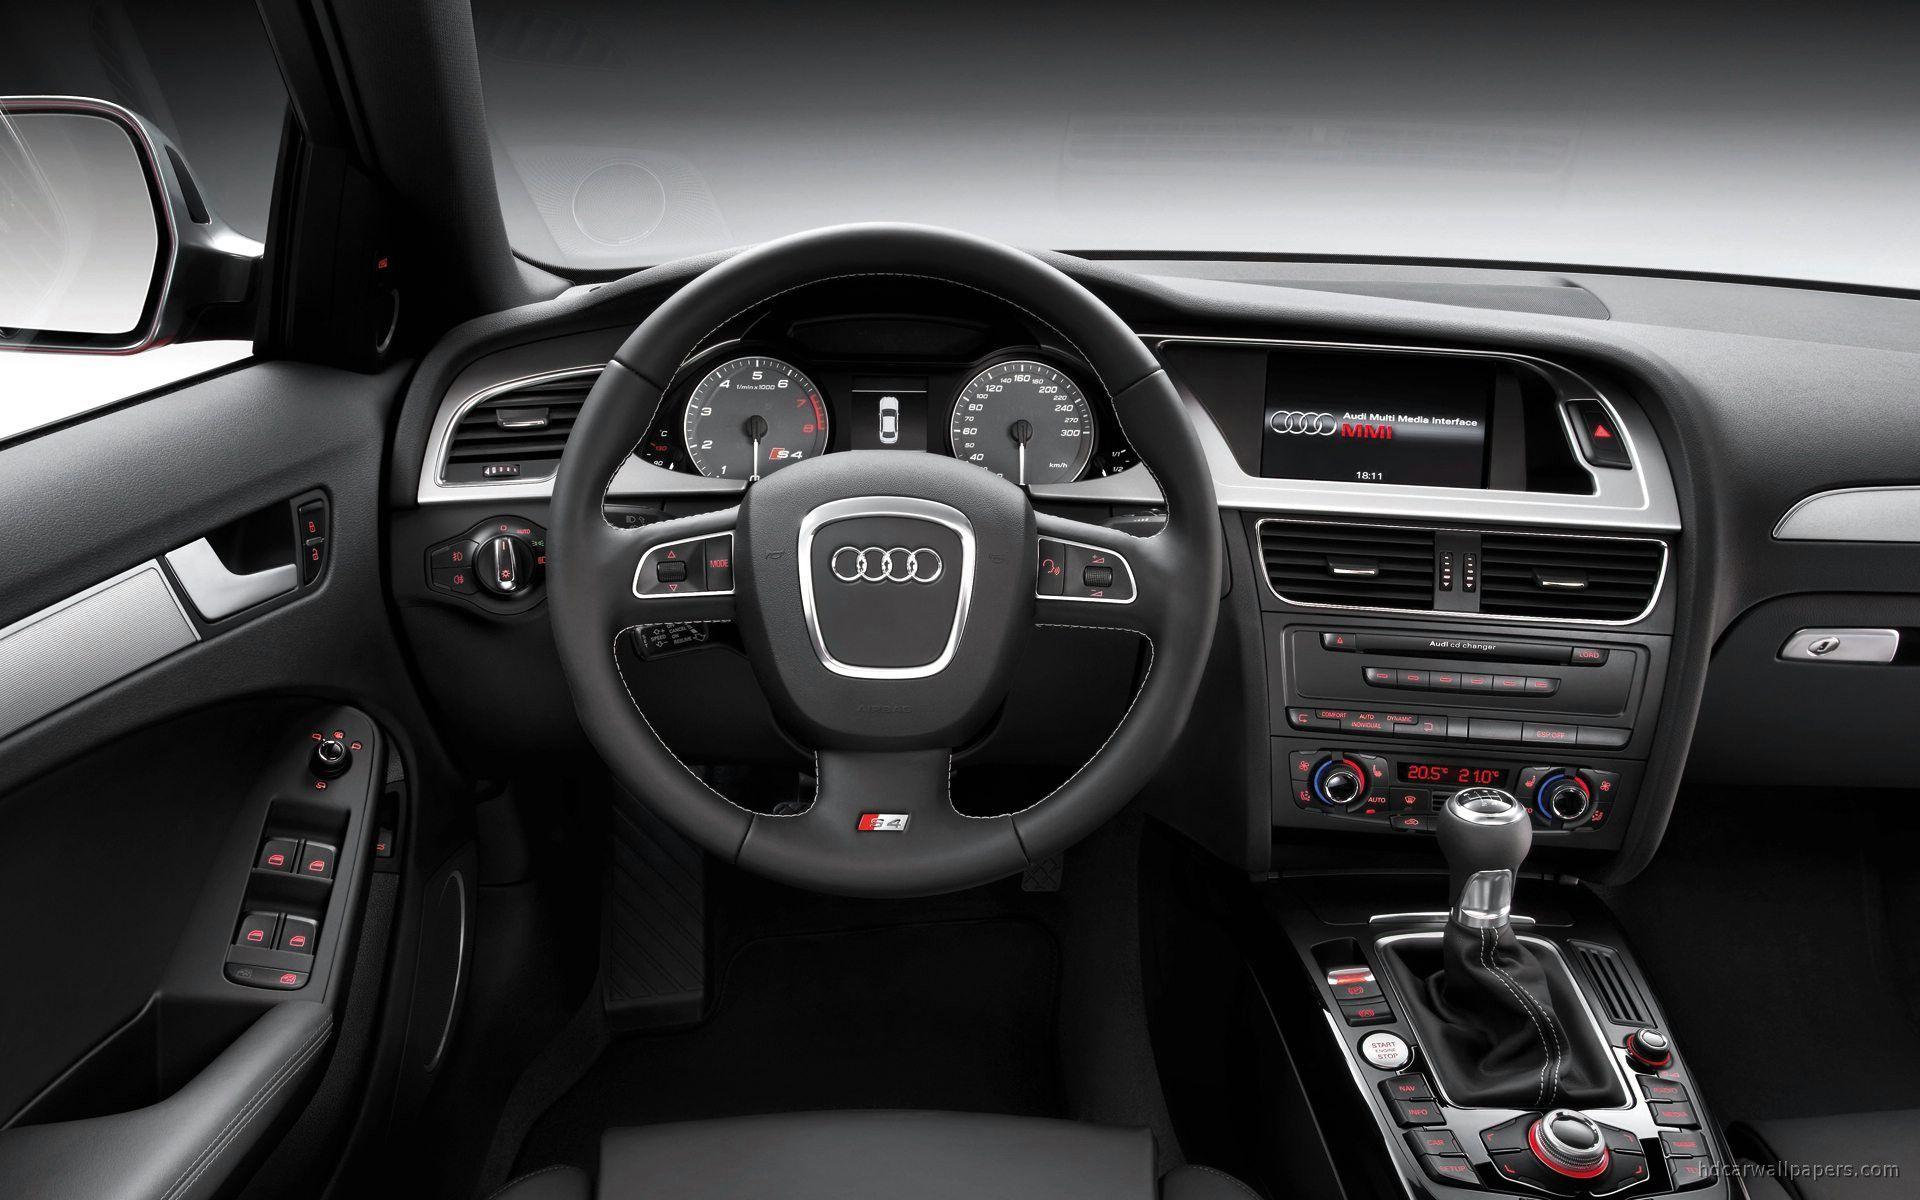 Audi S4 Interior Wallpaper. HD Car Wallpaper